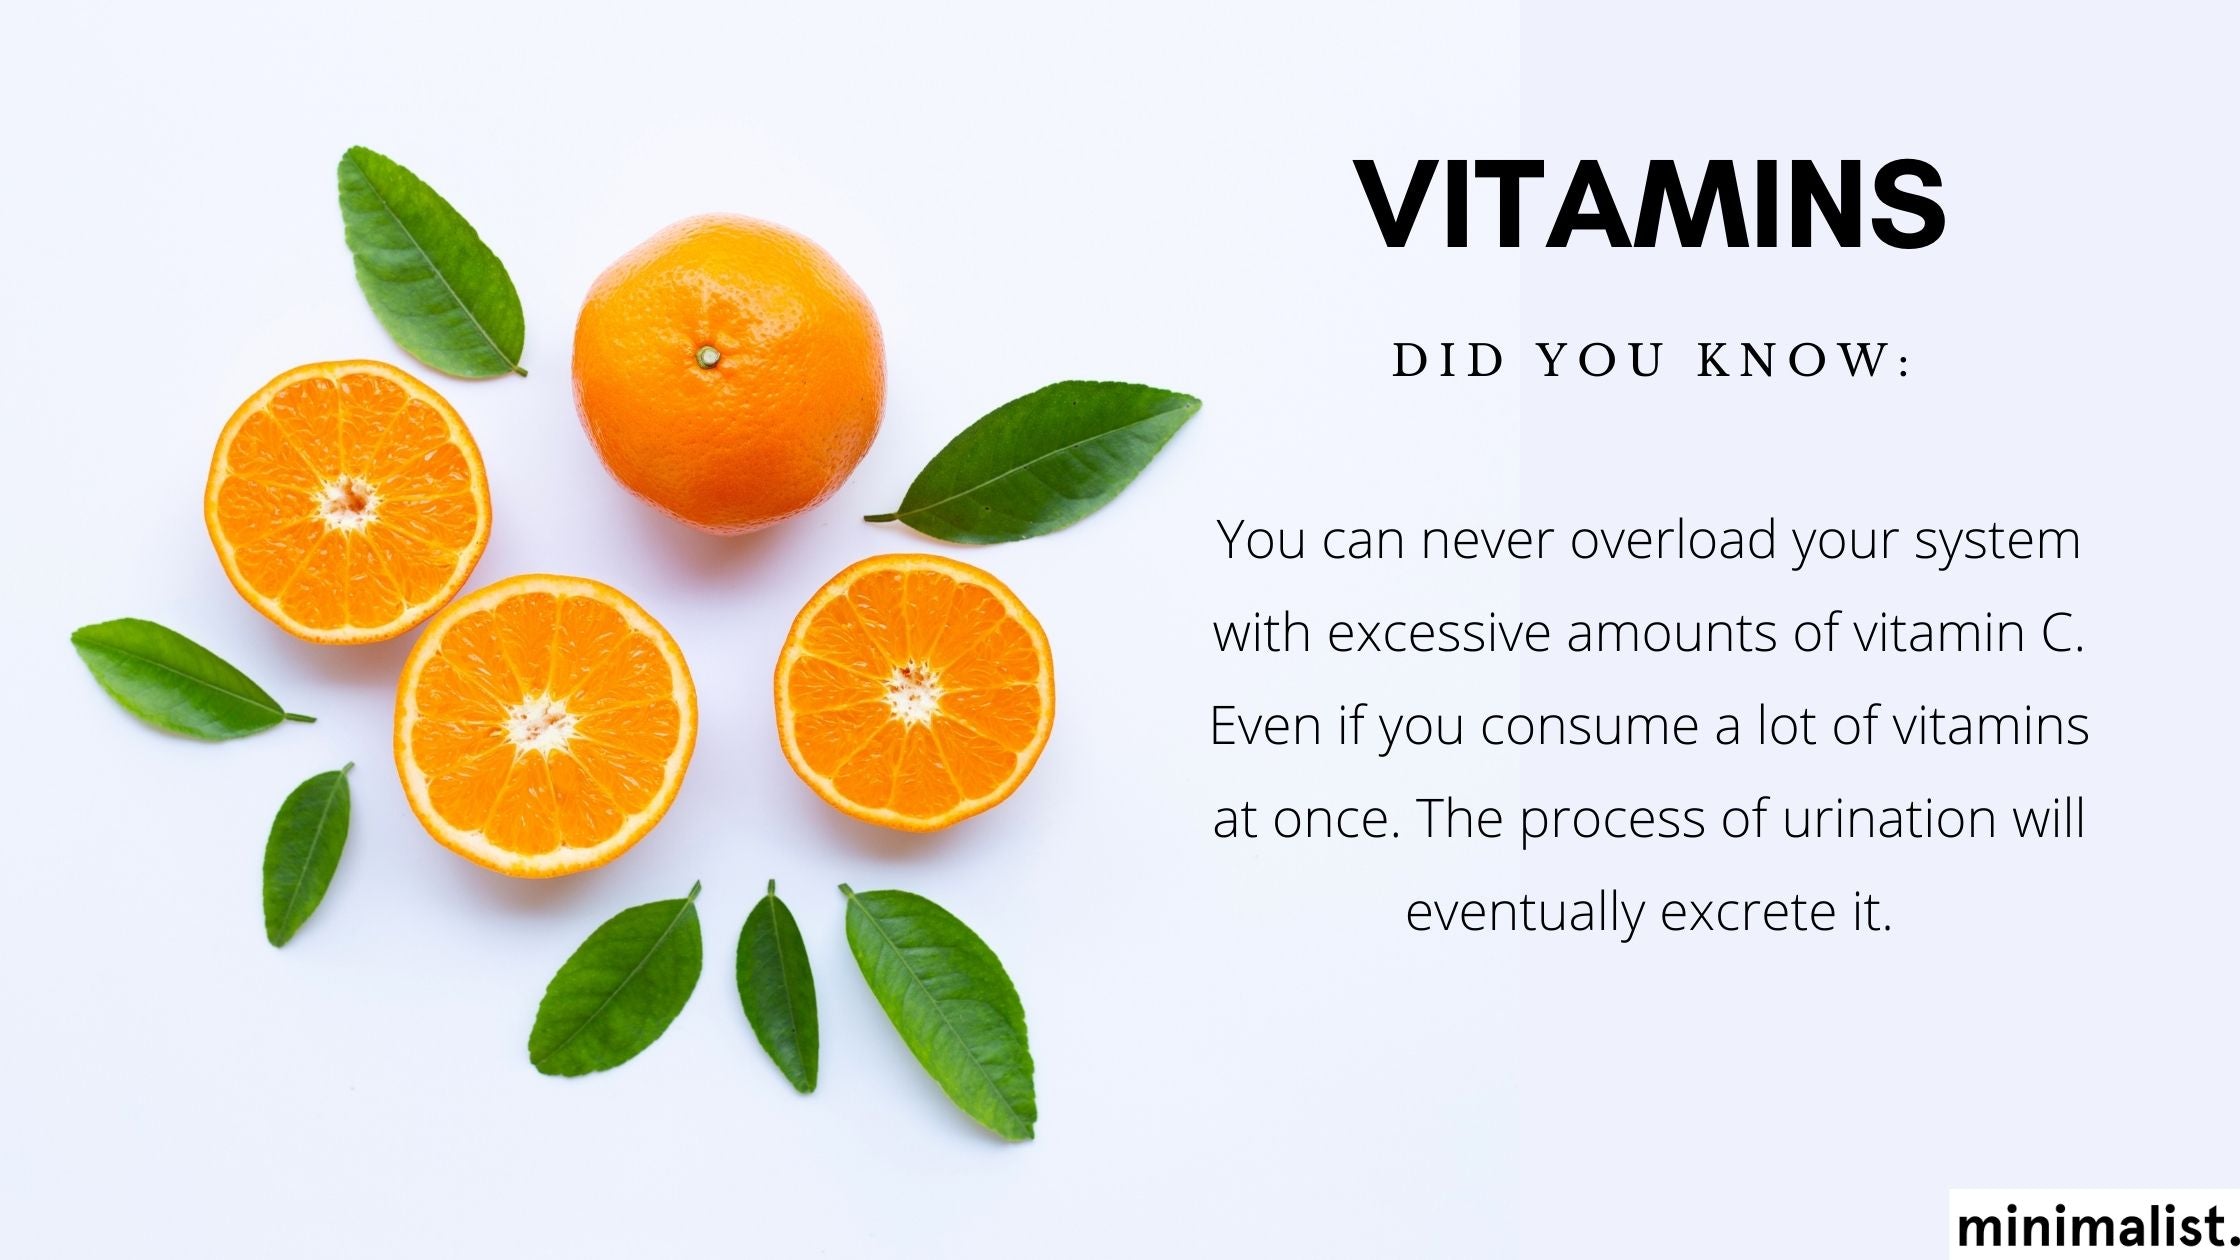 Vitamin C is an antioxidant